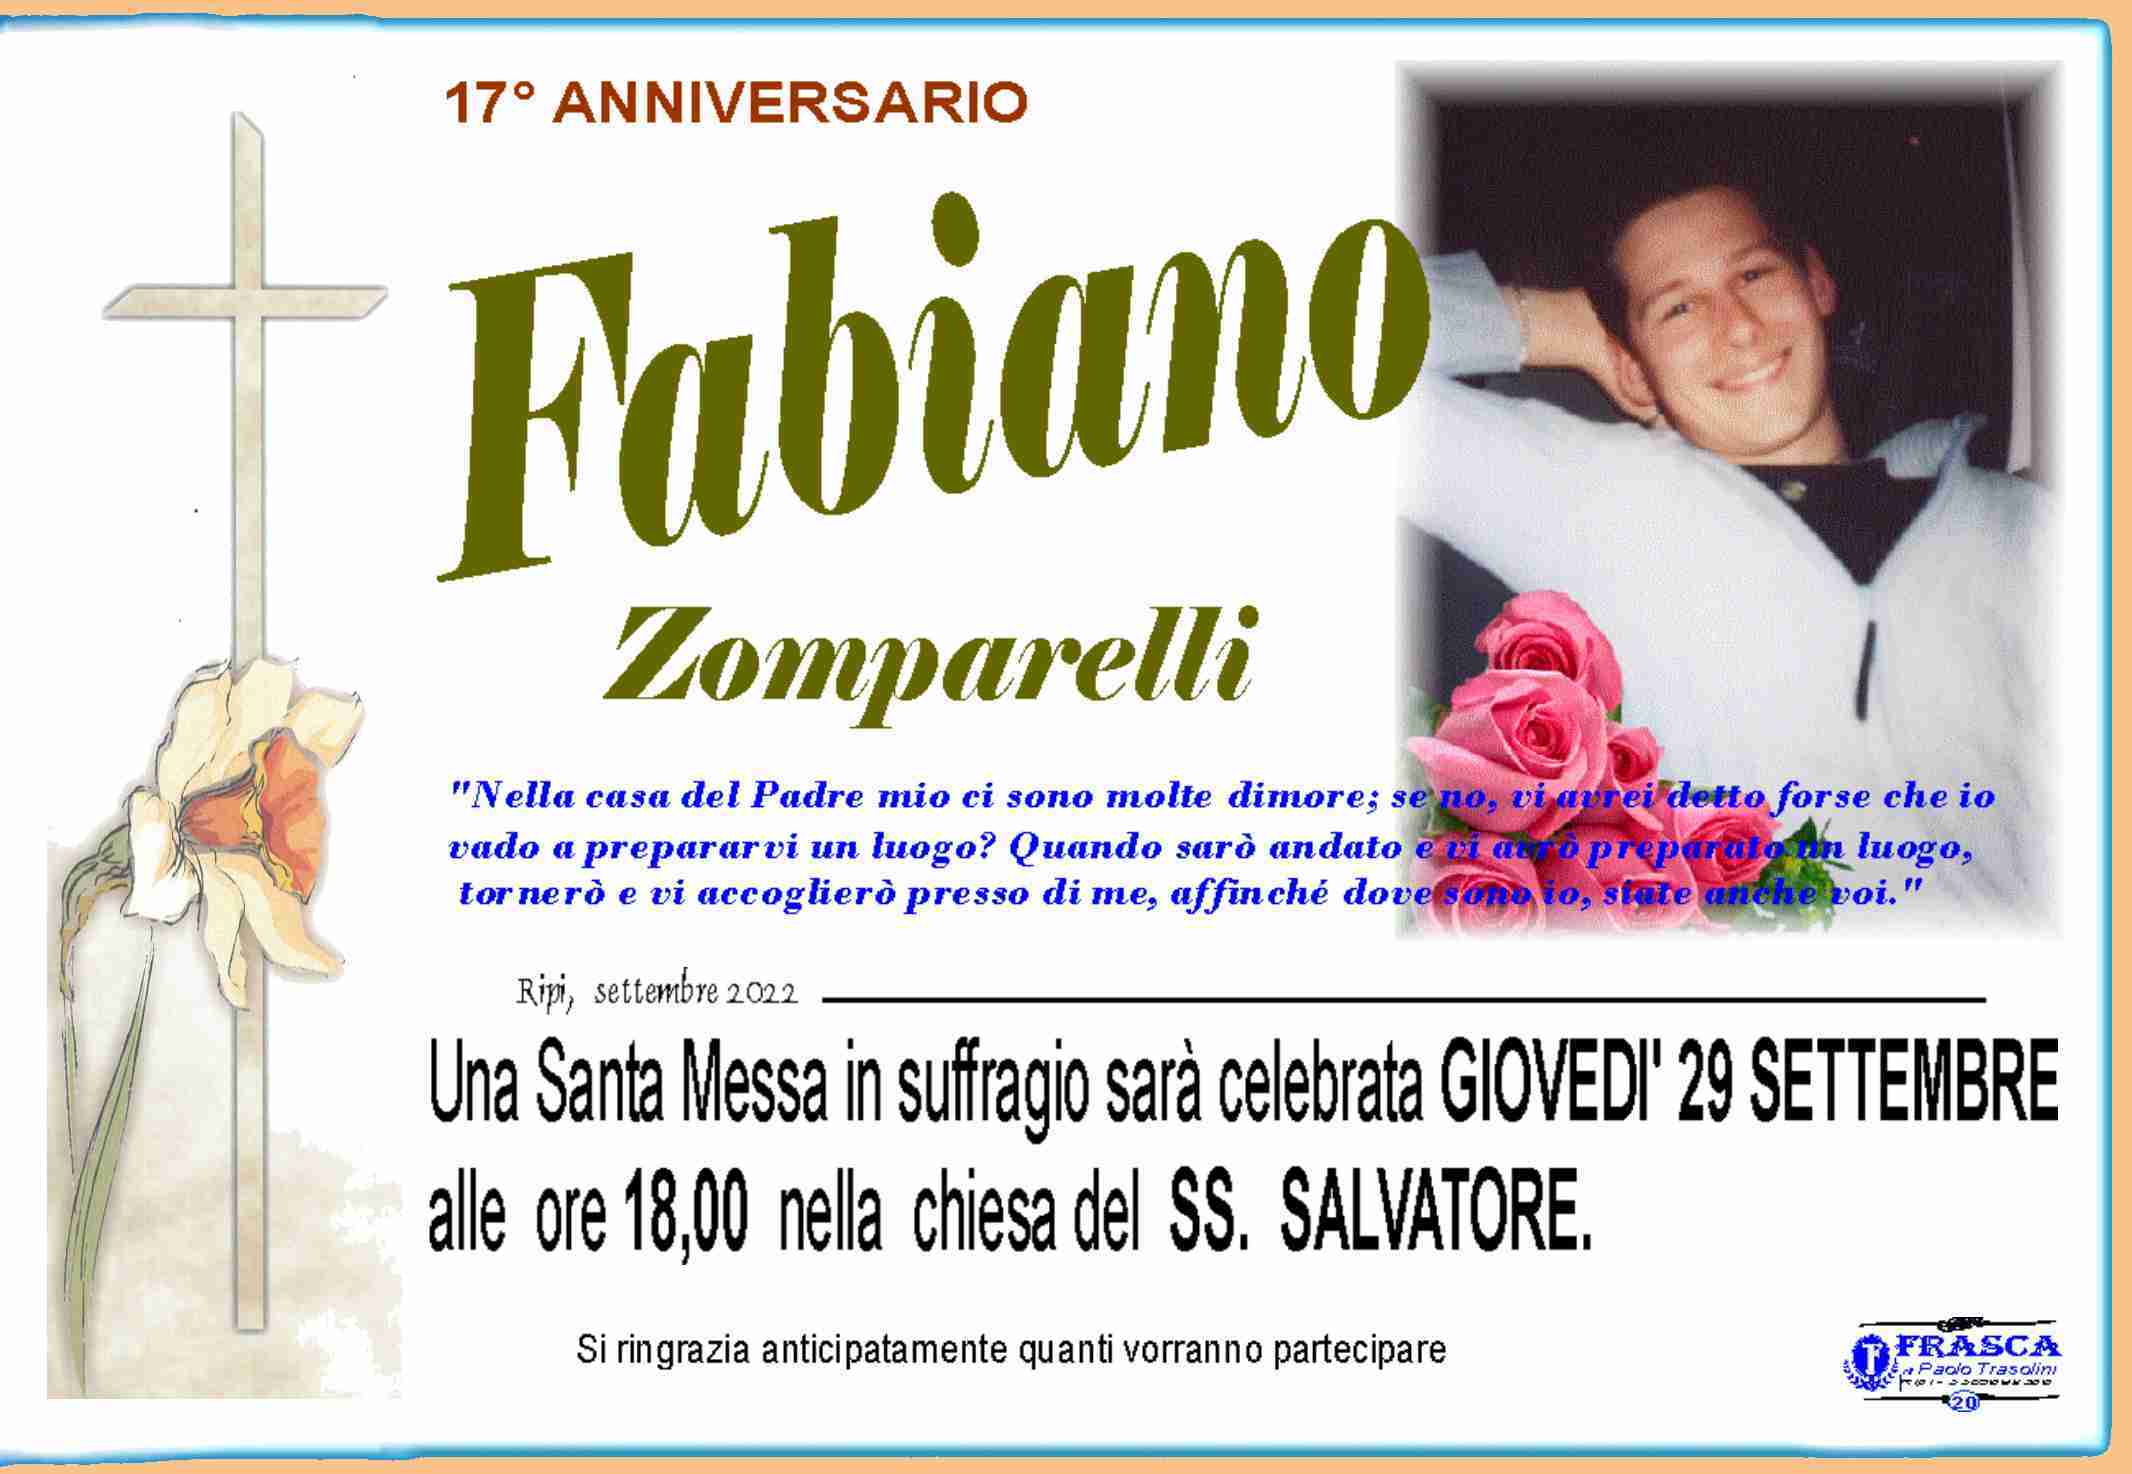 Fabiano Zomparelli